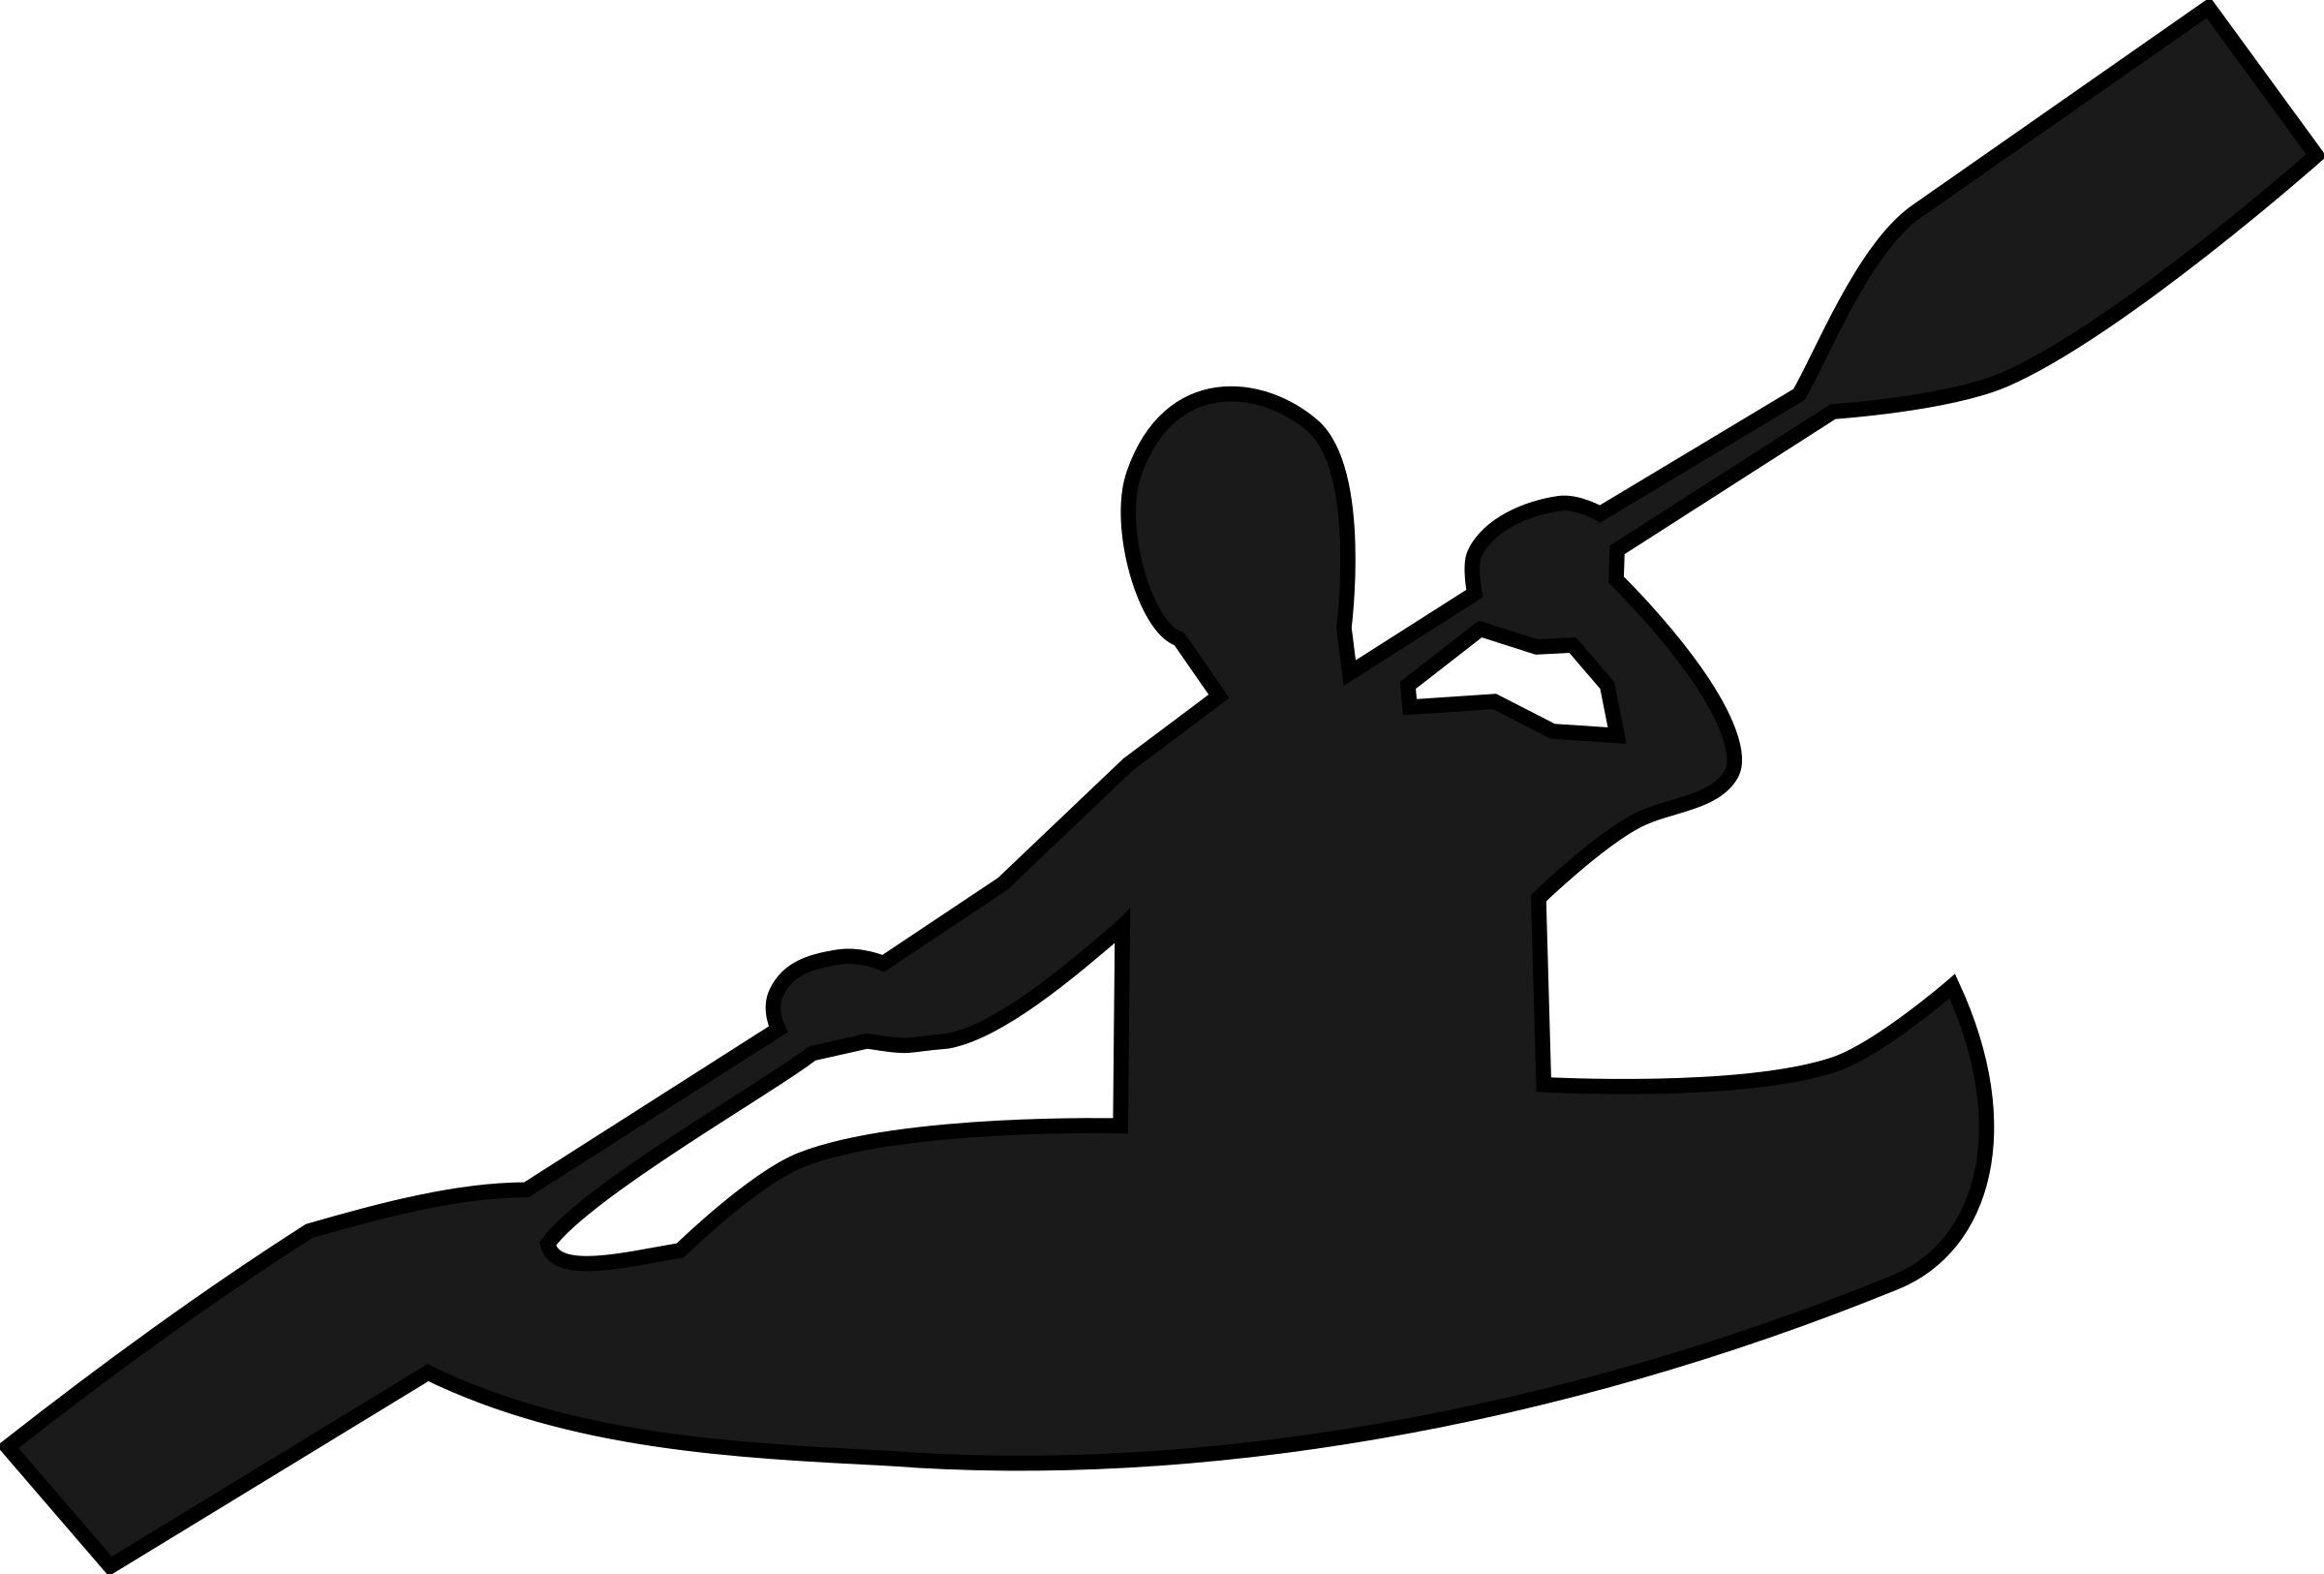 Kayak clipart boat oar, Kayak boat oar Transparent FREE for